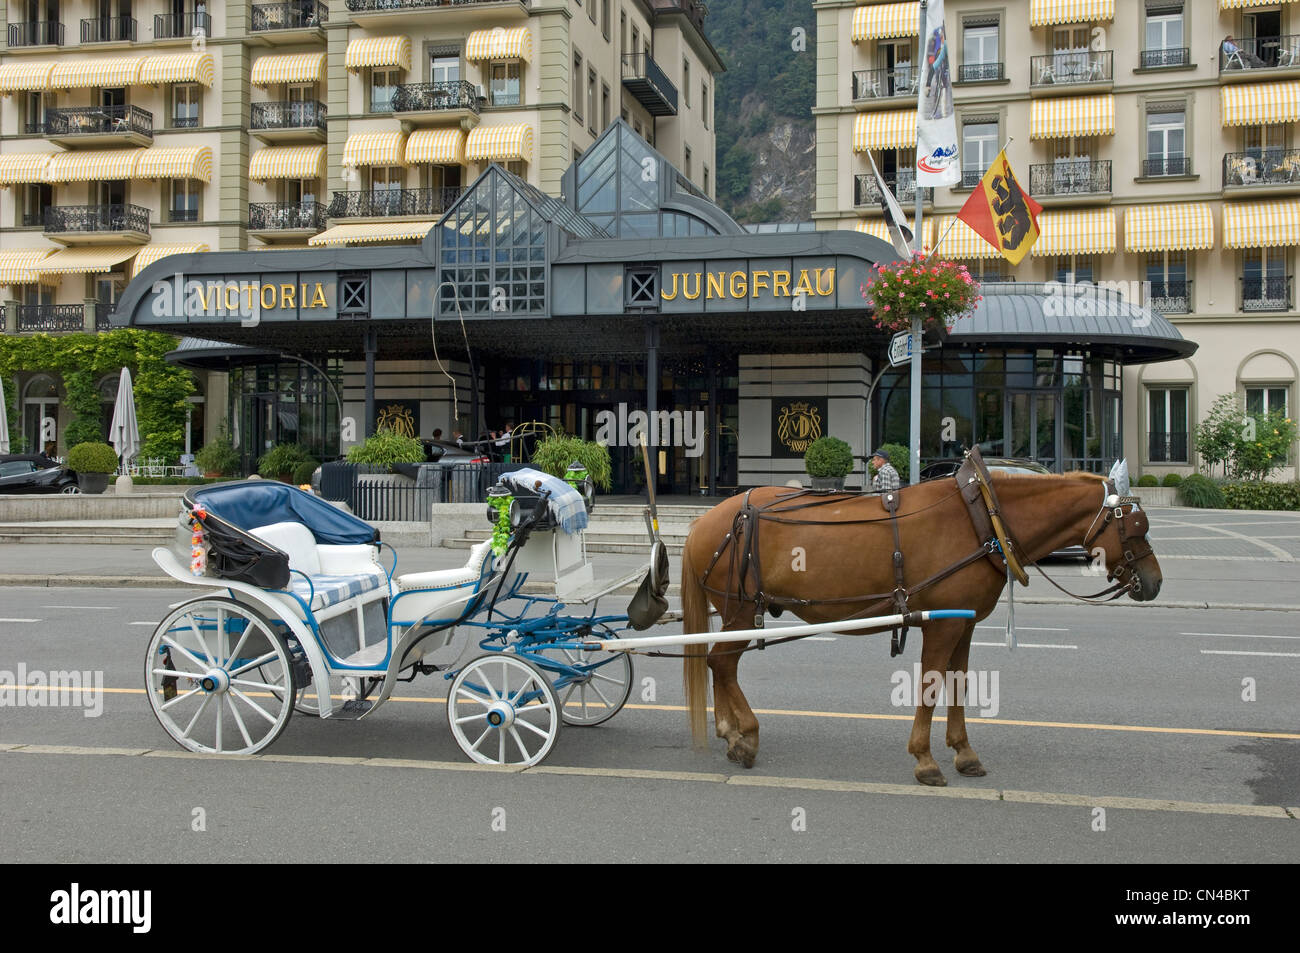 Pferdekutsche Kutsche vor dem Hotel Victoria Jungfrau in Interlaken im  Kanton Bern in der Schweiz Stockfotografie - Alamy